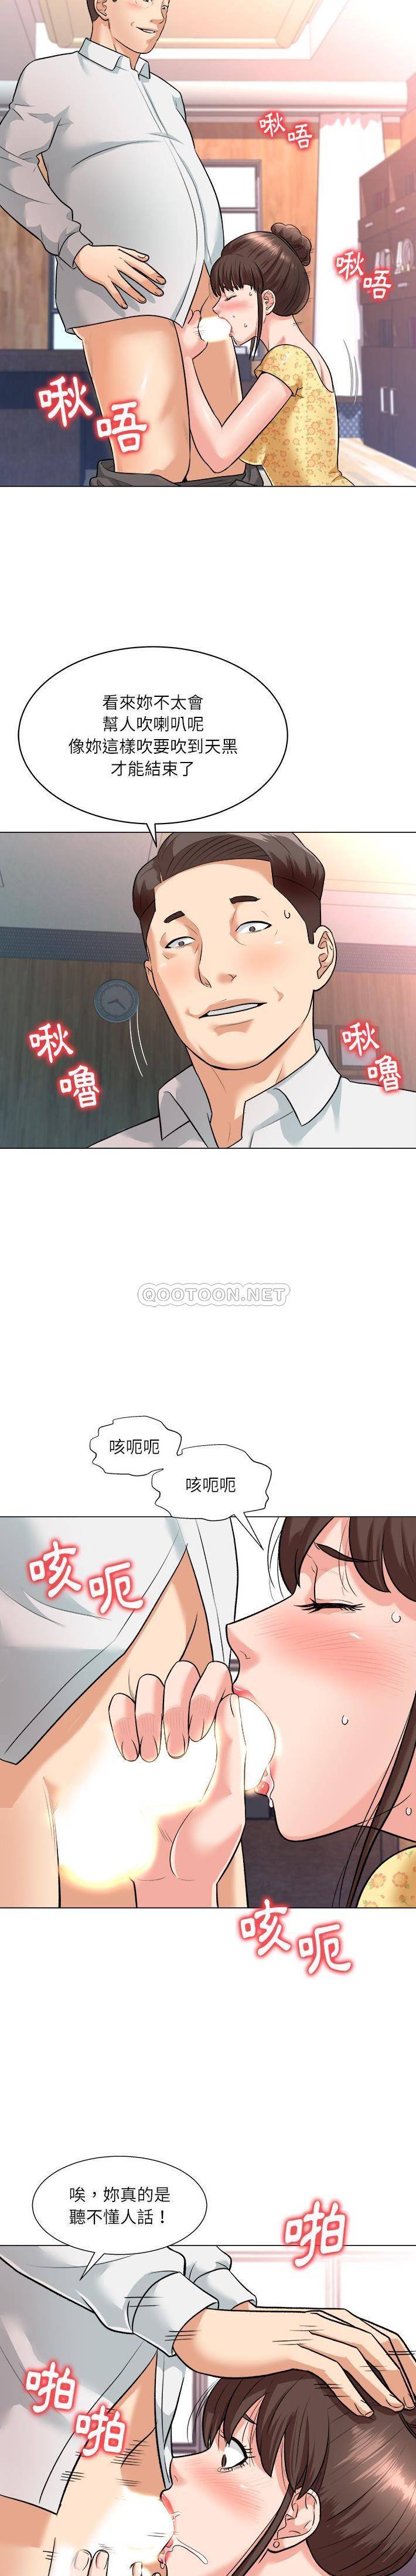 韩国污漫画 豪賭陷阱 第3话 3